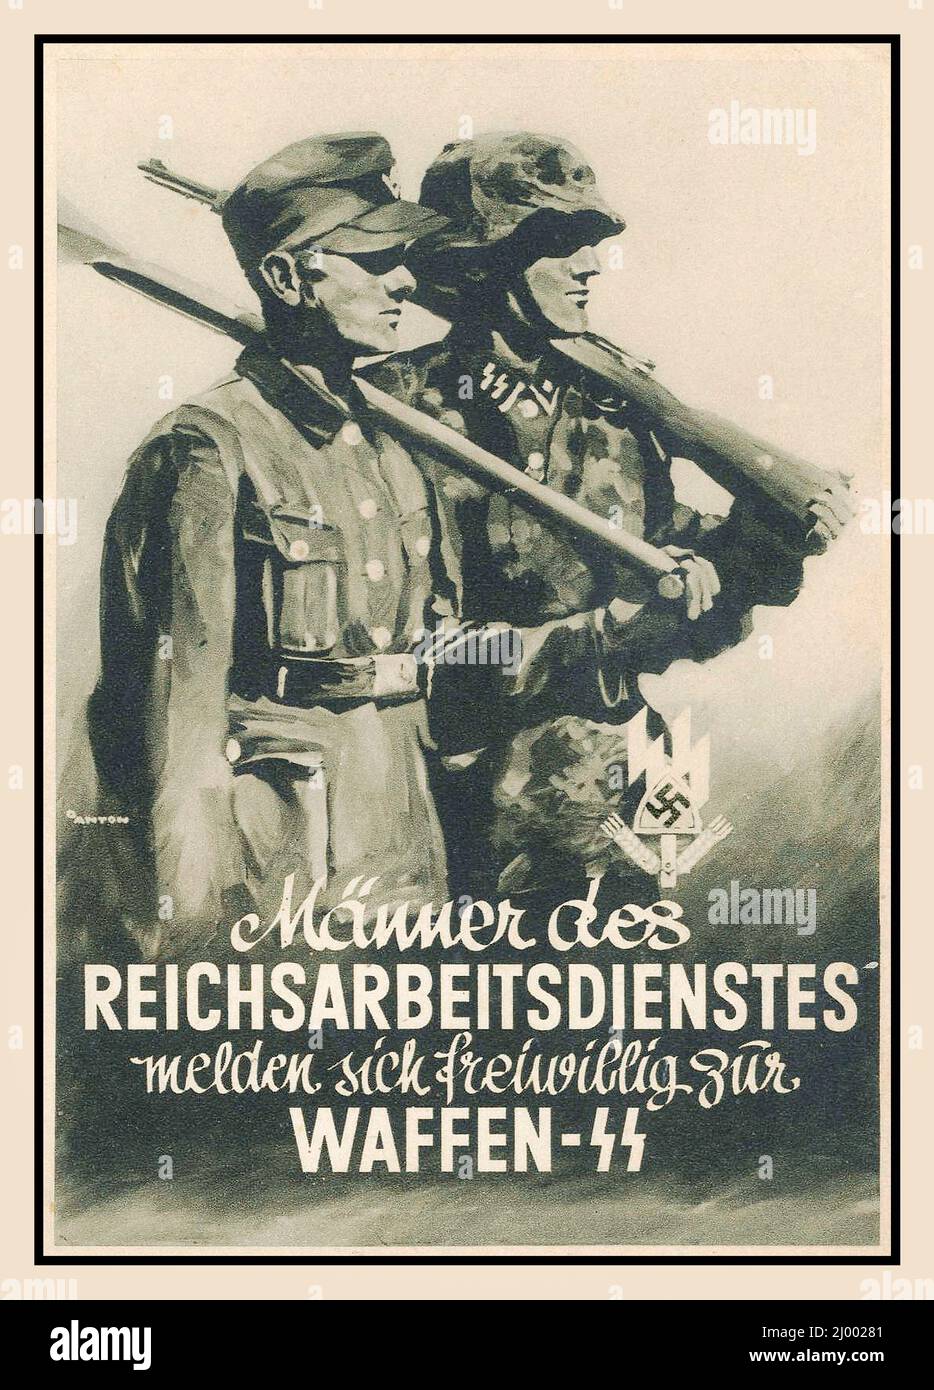 WAFFEN SS 1942 Poster Vintage nazista Propaganda reclutamento volontari maschi tedeschi che lavorano volontariamente in servizio al nazista Waffen SS 1942 Männer DES REICHSARBEITSDIENSTES MELDEN SICH FREIWILLIG ZUR WAFFEN-SS seconda guerra mondiale WW2 Foto Stock